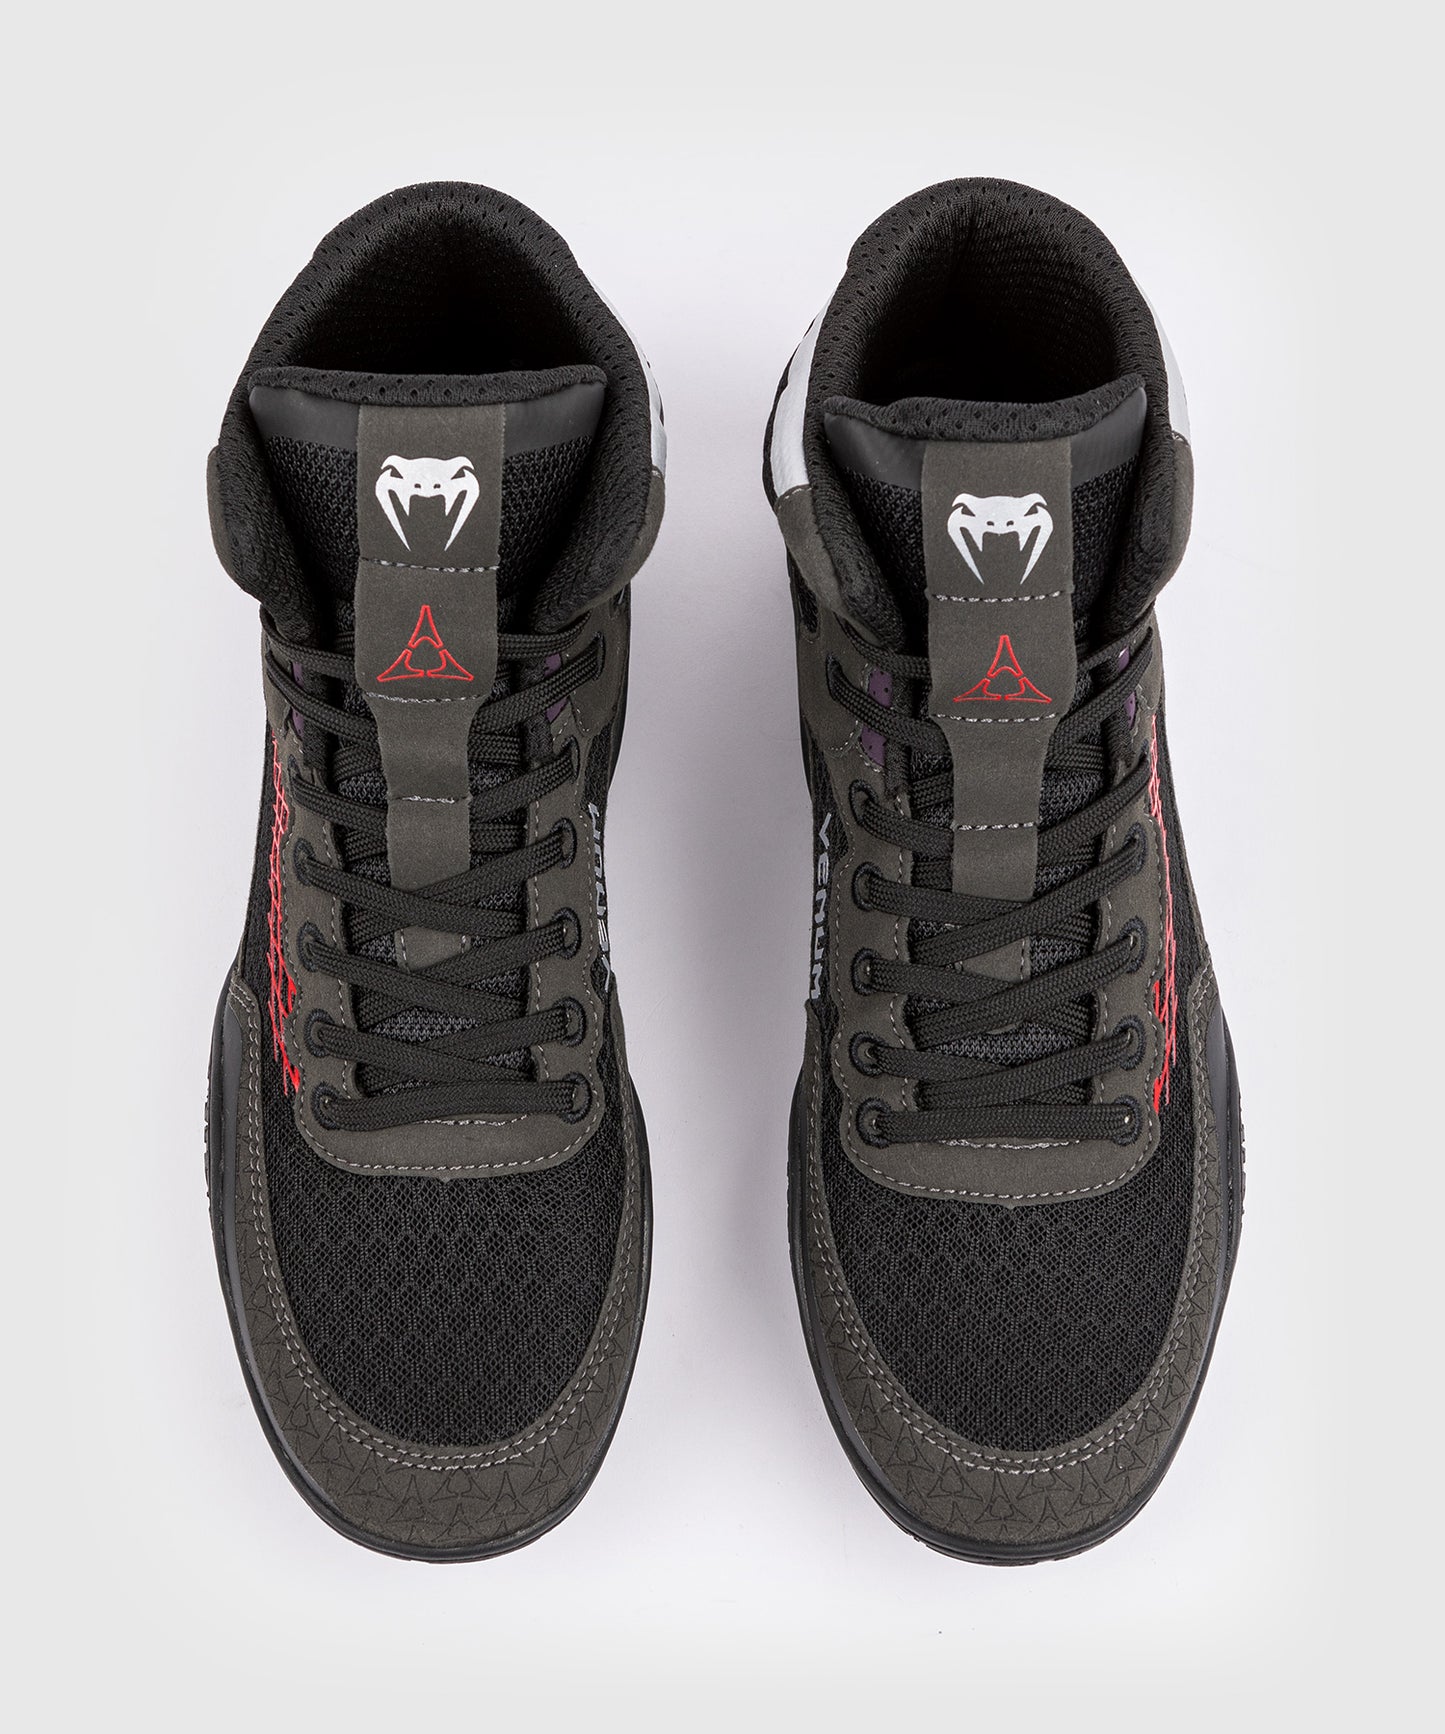 Chaussures de lutte Venum x Dodge Banshee - Noir - Noir